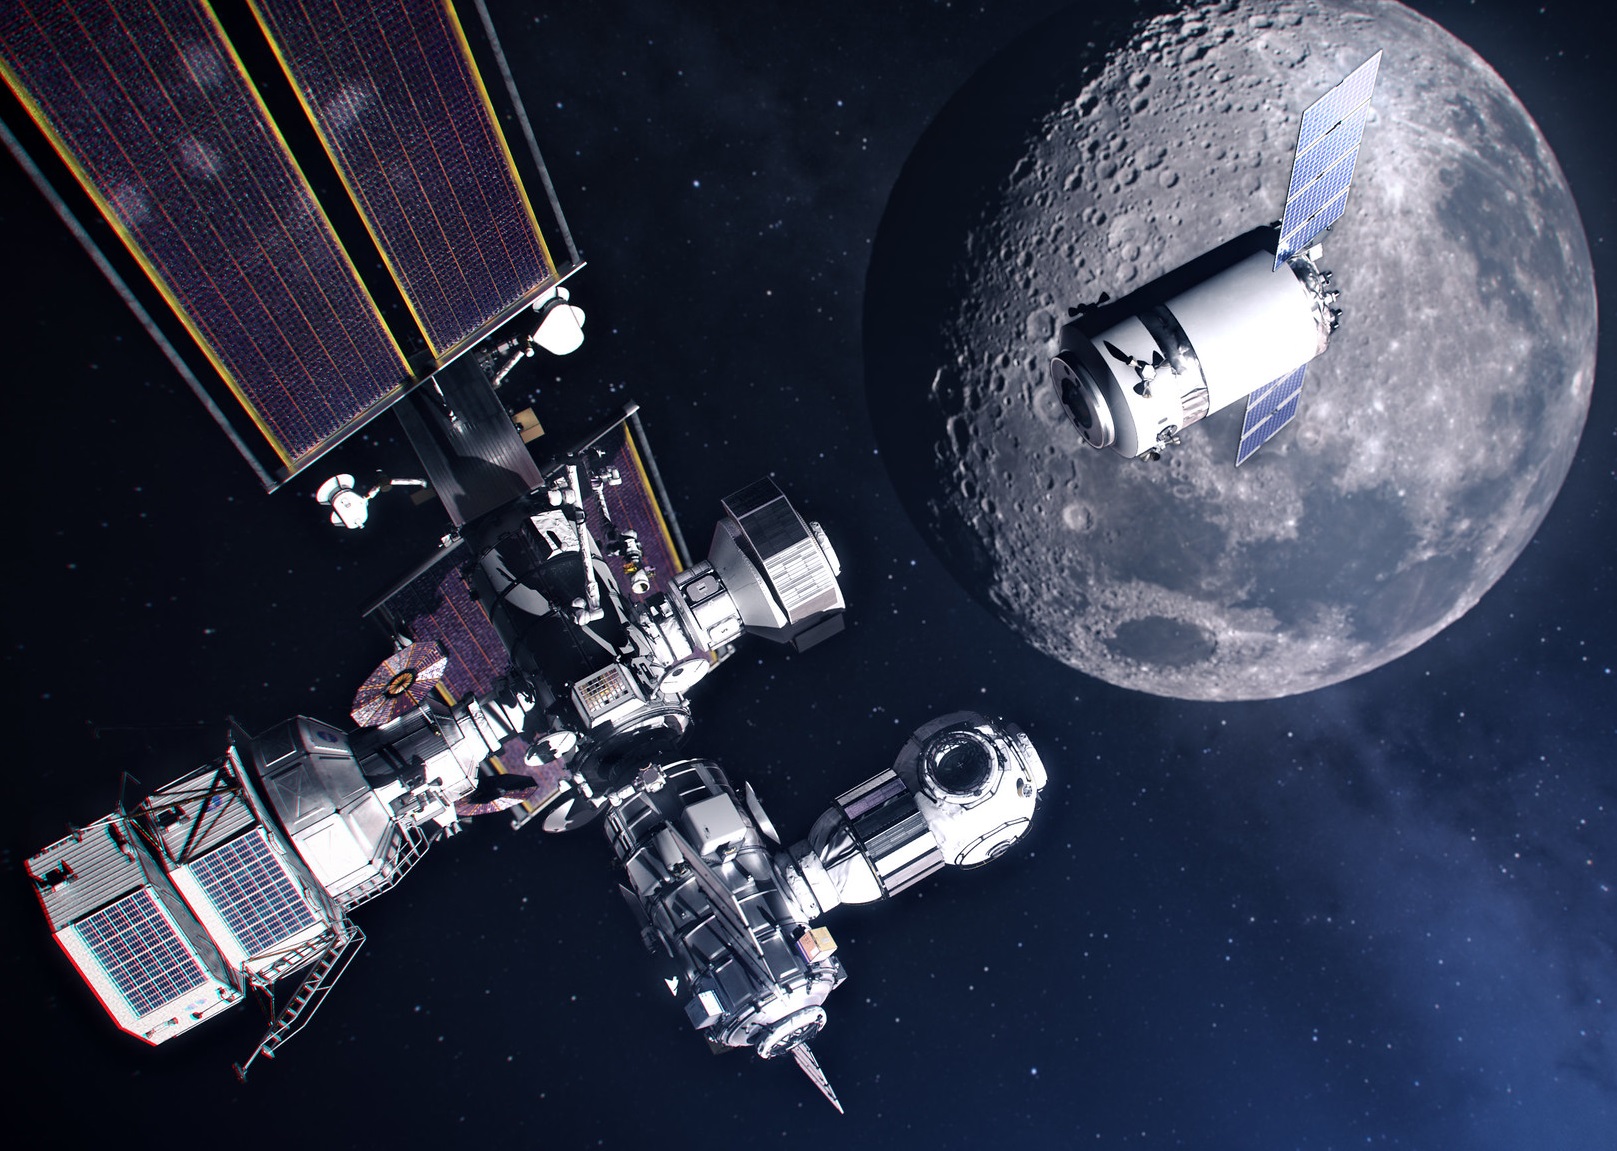 Látványos képeket tett közzé a NASA a Hold körül keringő űrállomásról